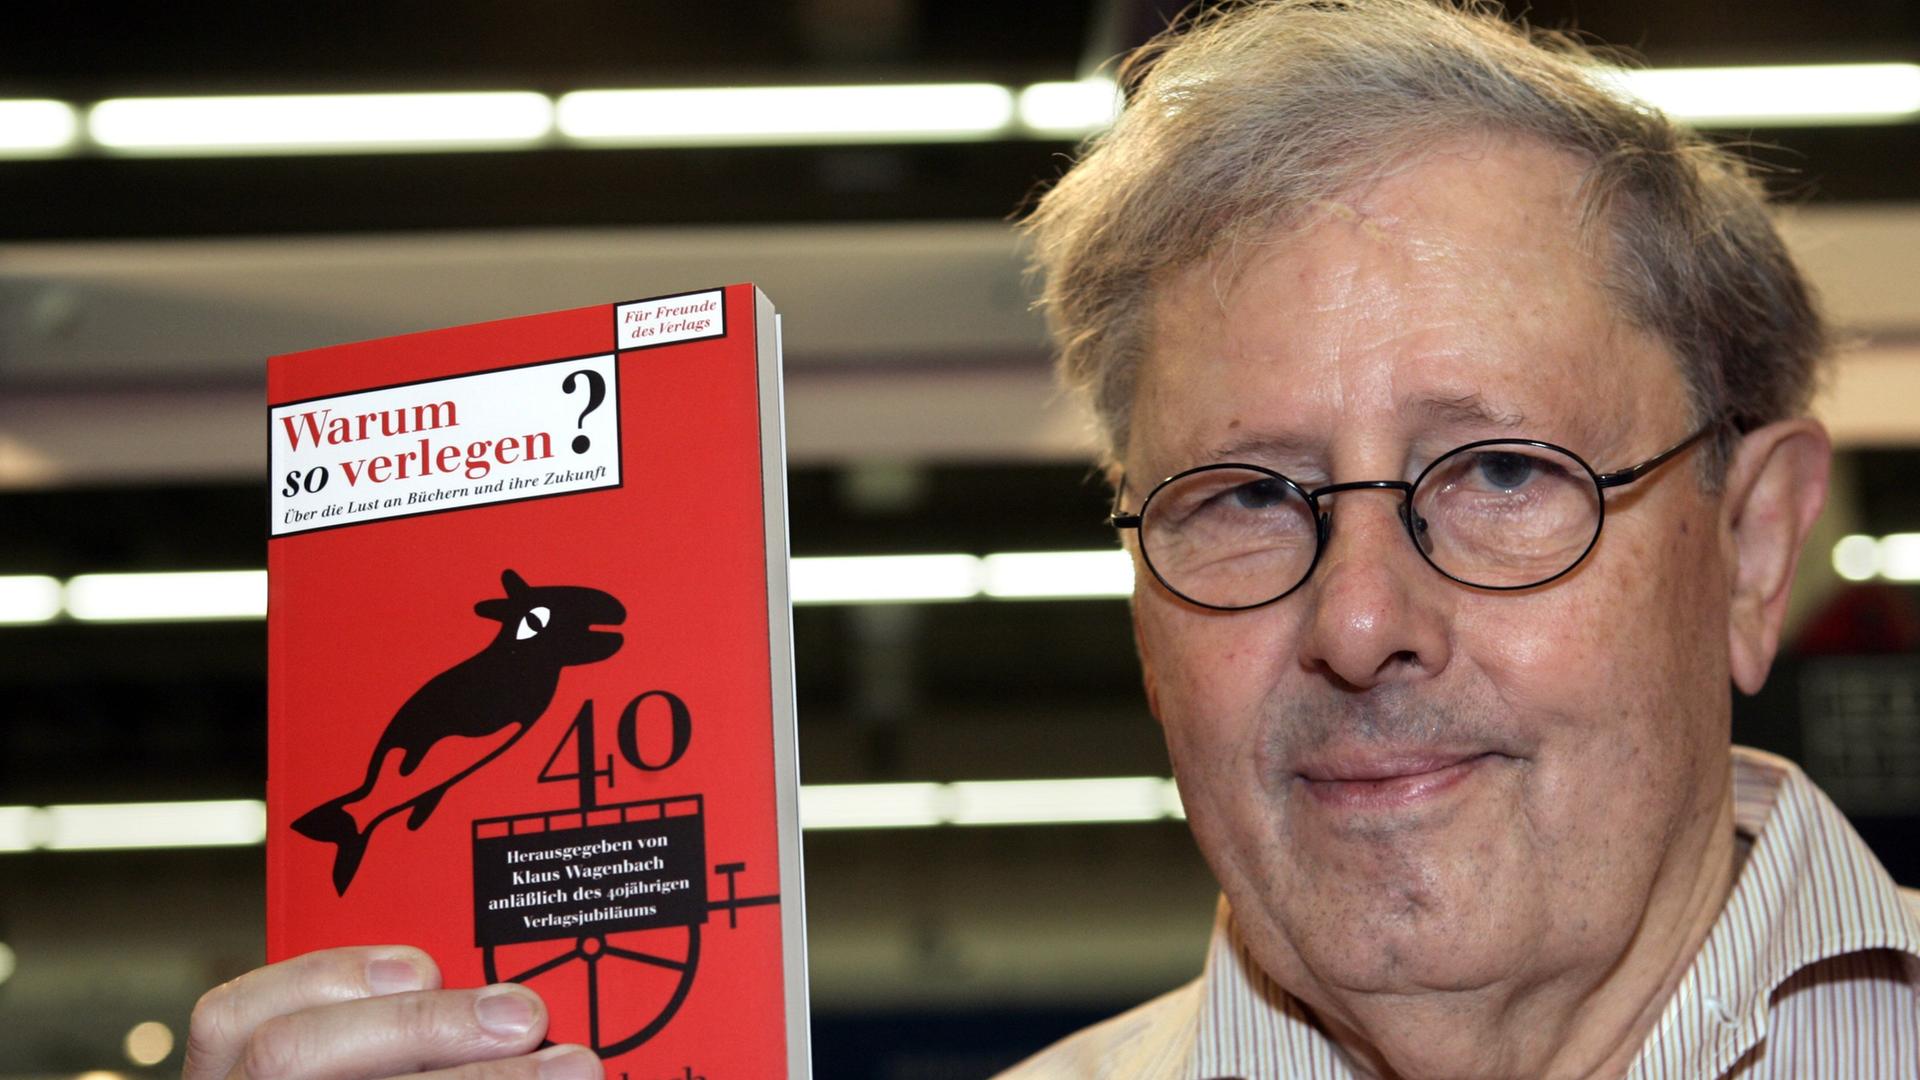 Der Verleger Klaus Wagenbach hält ein rotes Buch hoch